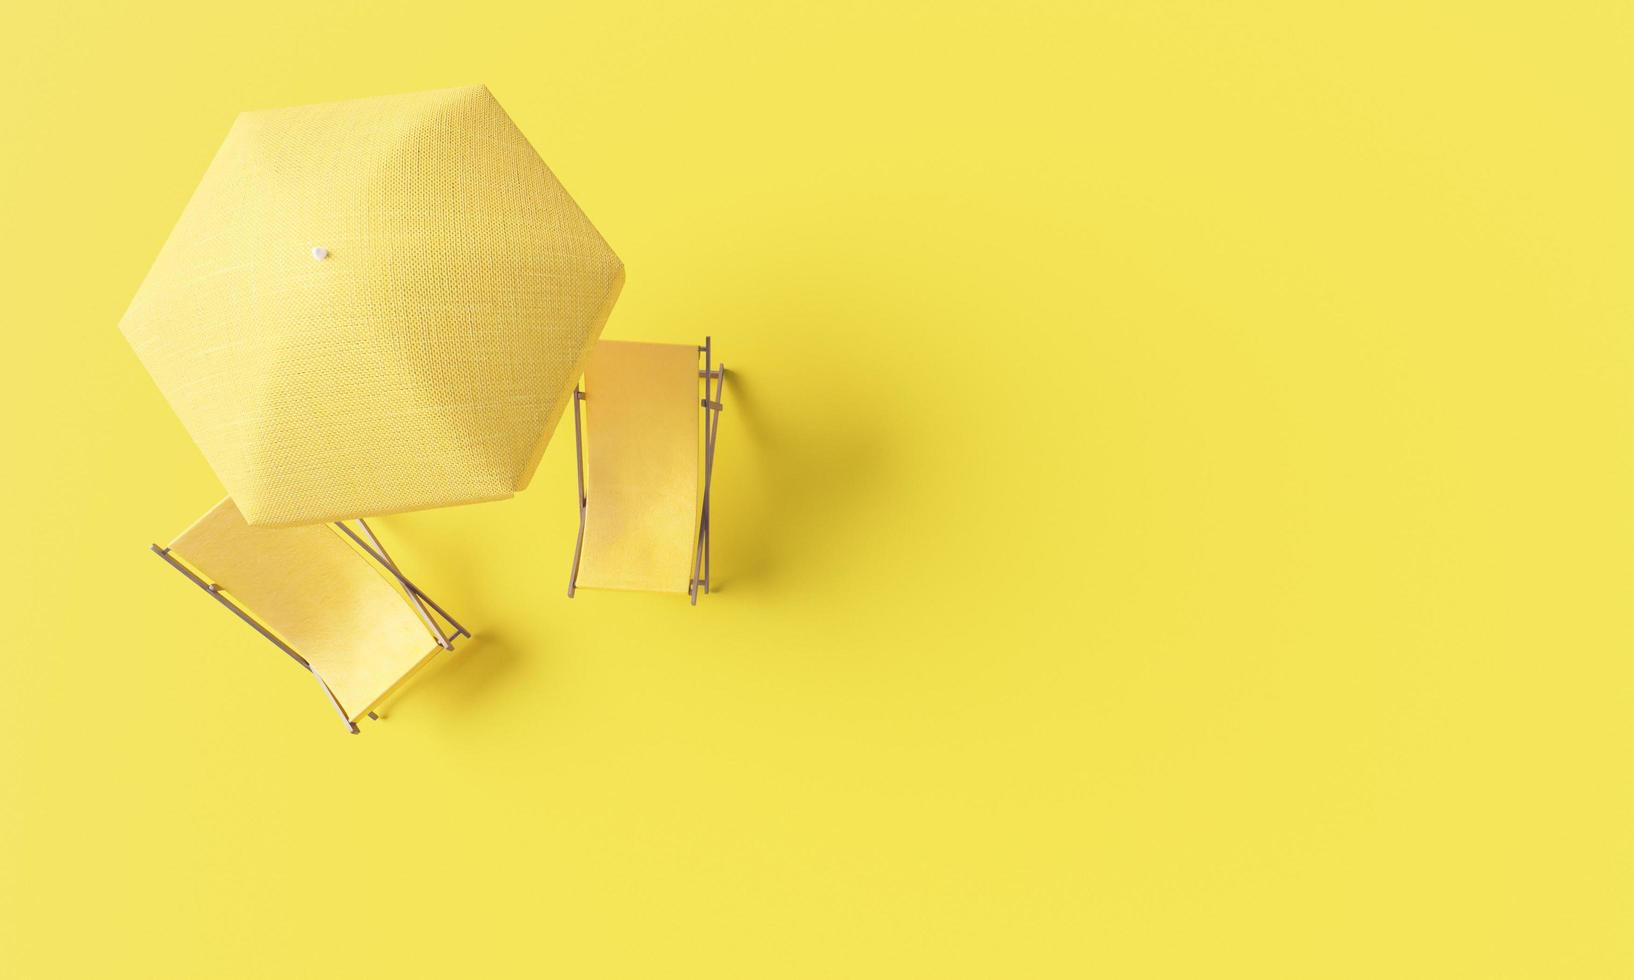 cadeiras amarelas e guarda-chuva em fundo amarelo, renderização em 3D foto